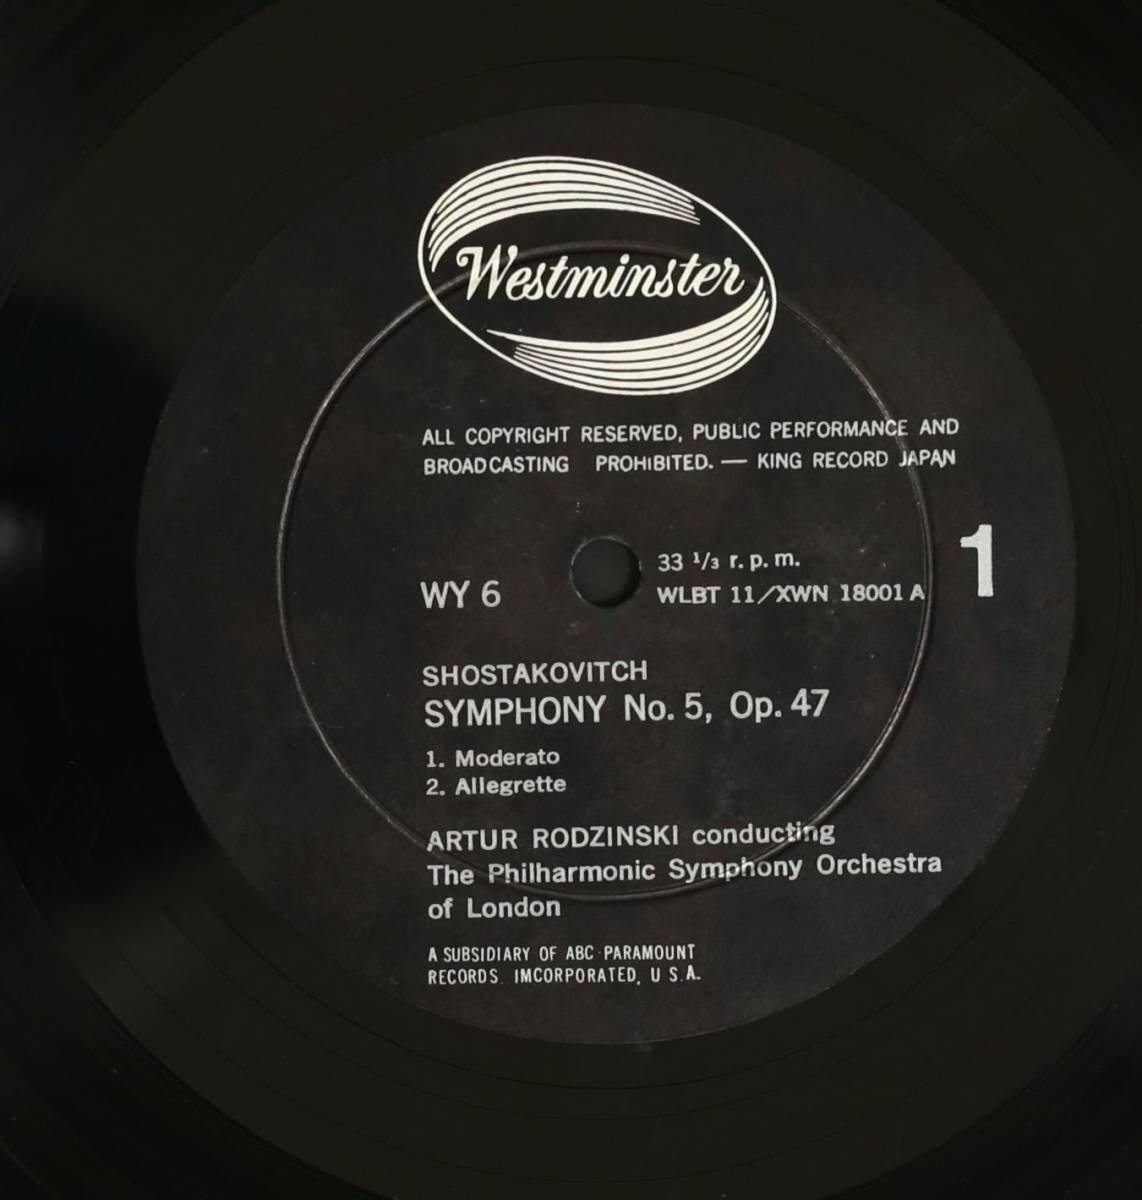 【国内初期LP】ロジンスキー,LSO/ショスタコーヴィッチ:交響曲第5番(並品,WESTMINSTER,Rodzinski)_画像3